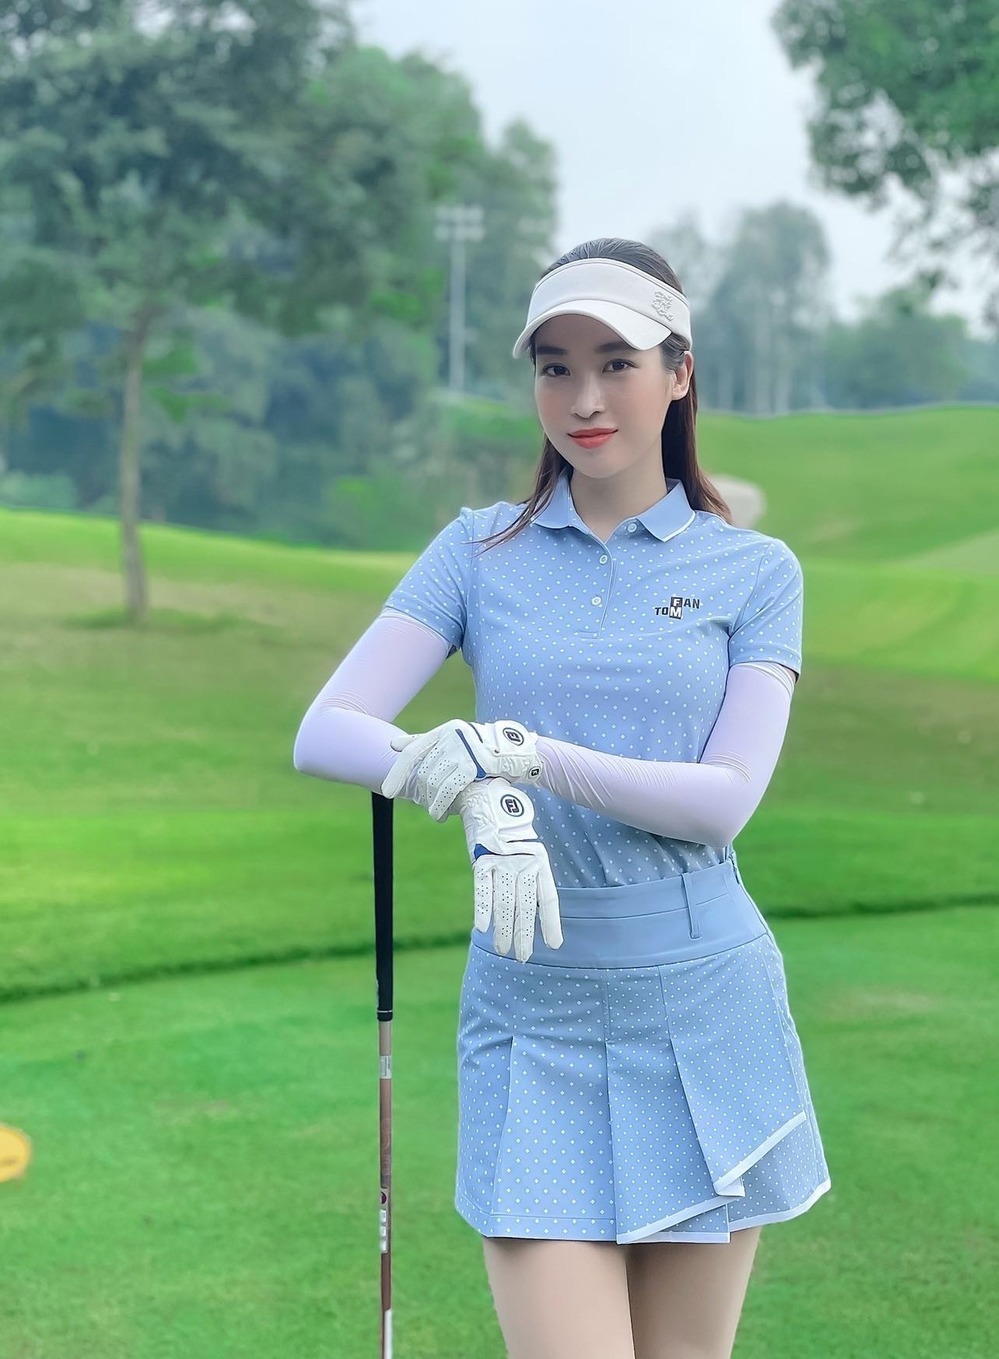  
Hoa hậu Đỗ Mỹ Linh cũng nhập hội chơi golf đình đám. (Ảnh: Facebook Đỗ Mỹ Linh)